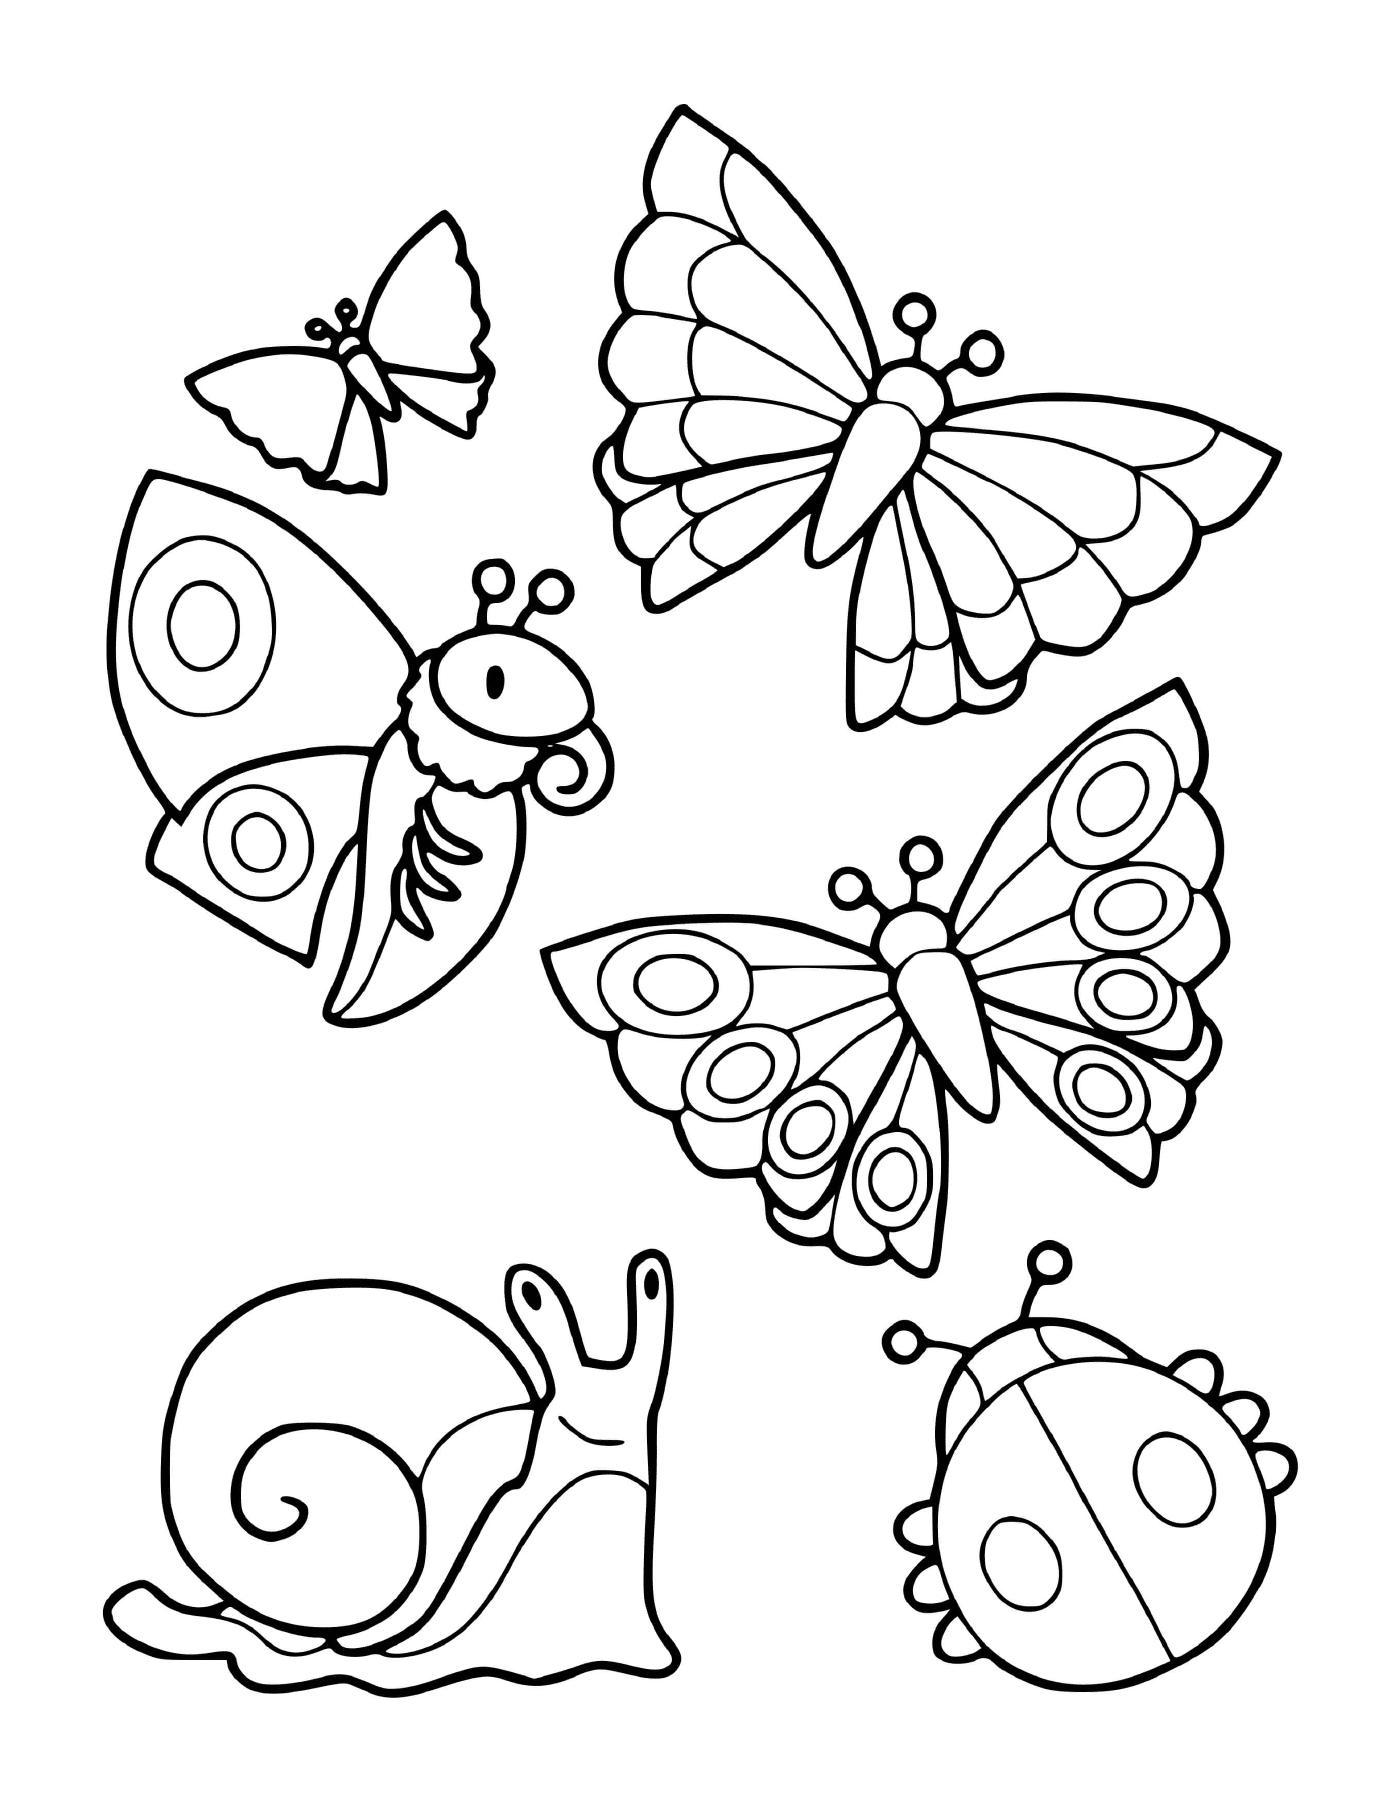  Una collezione di insetti tra cui farfalle e una lumaca 